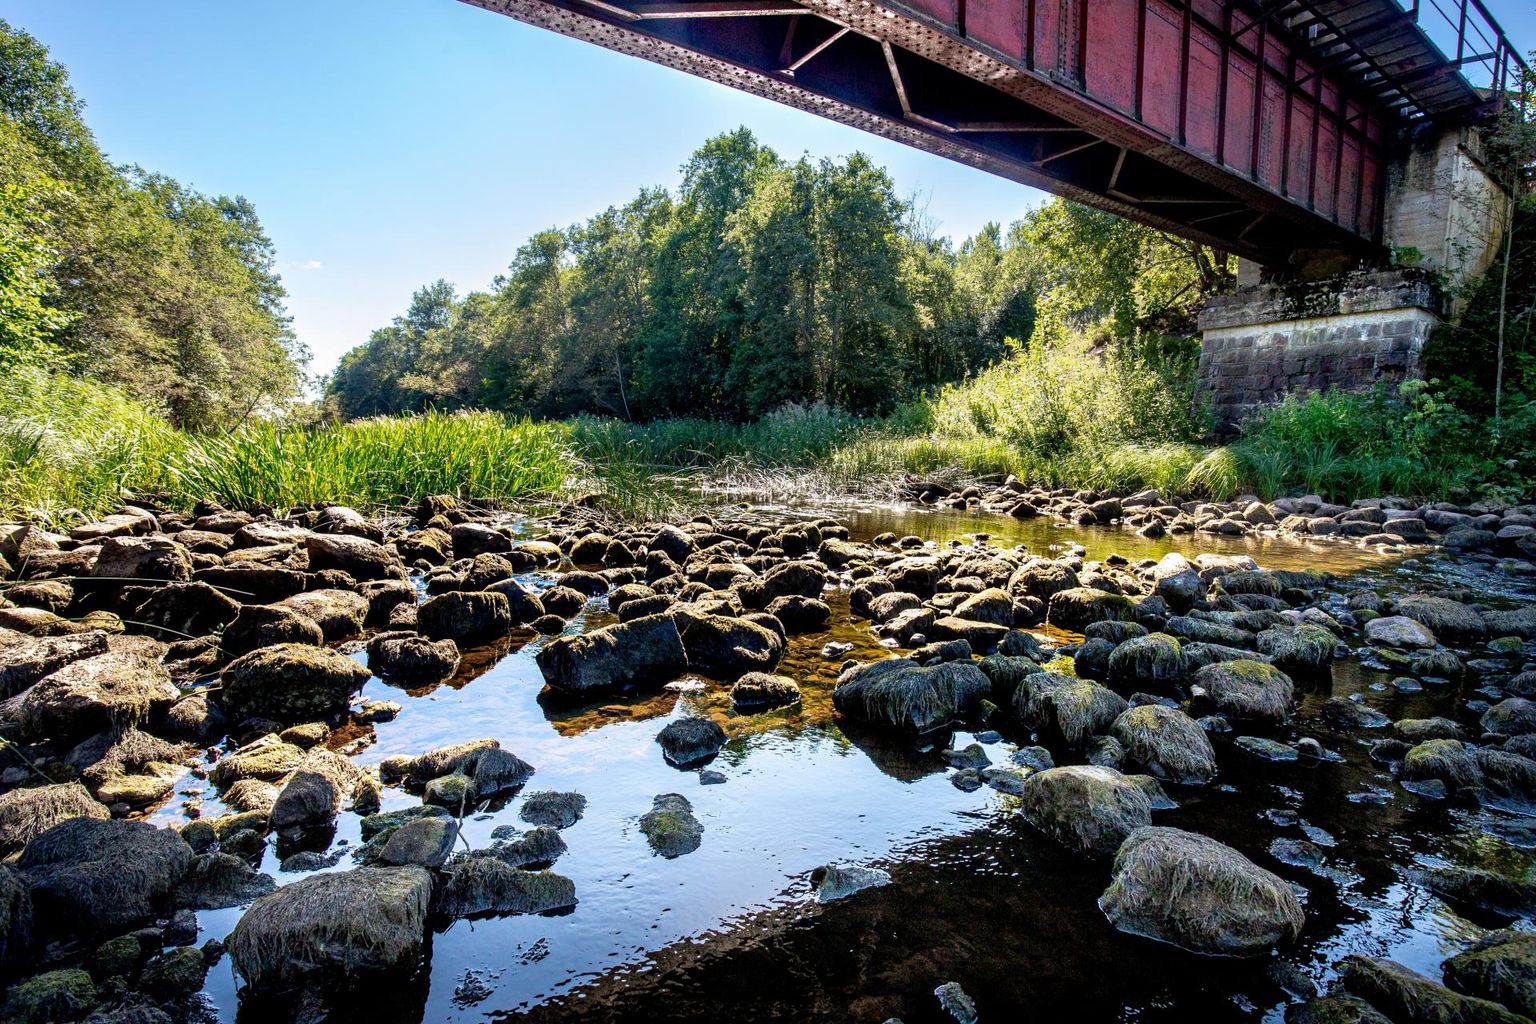 Reiu jõel asuva Sillaküla raudteesilla juures on veetase väga madal ja jõepõhjast ulatuvad välja kivid ning osa veetaimi on kuival. 